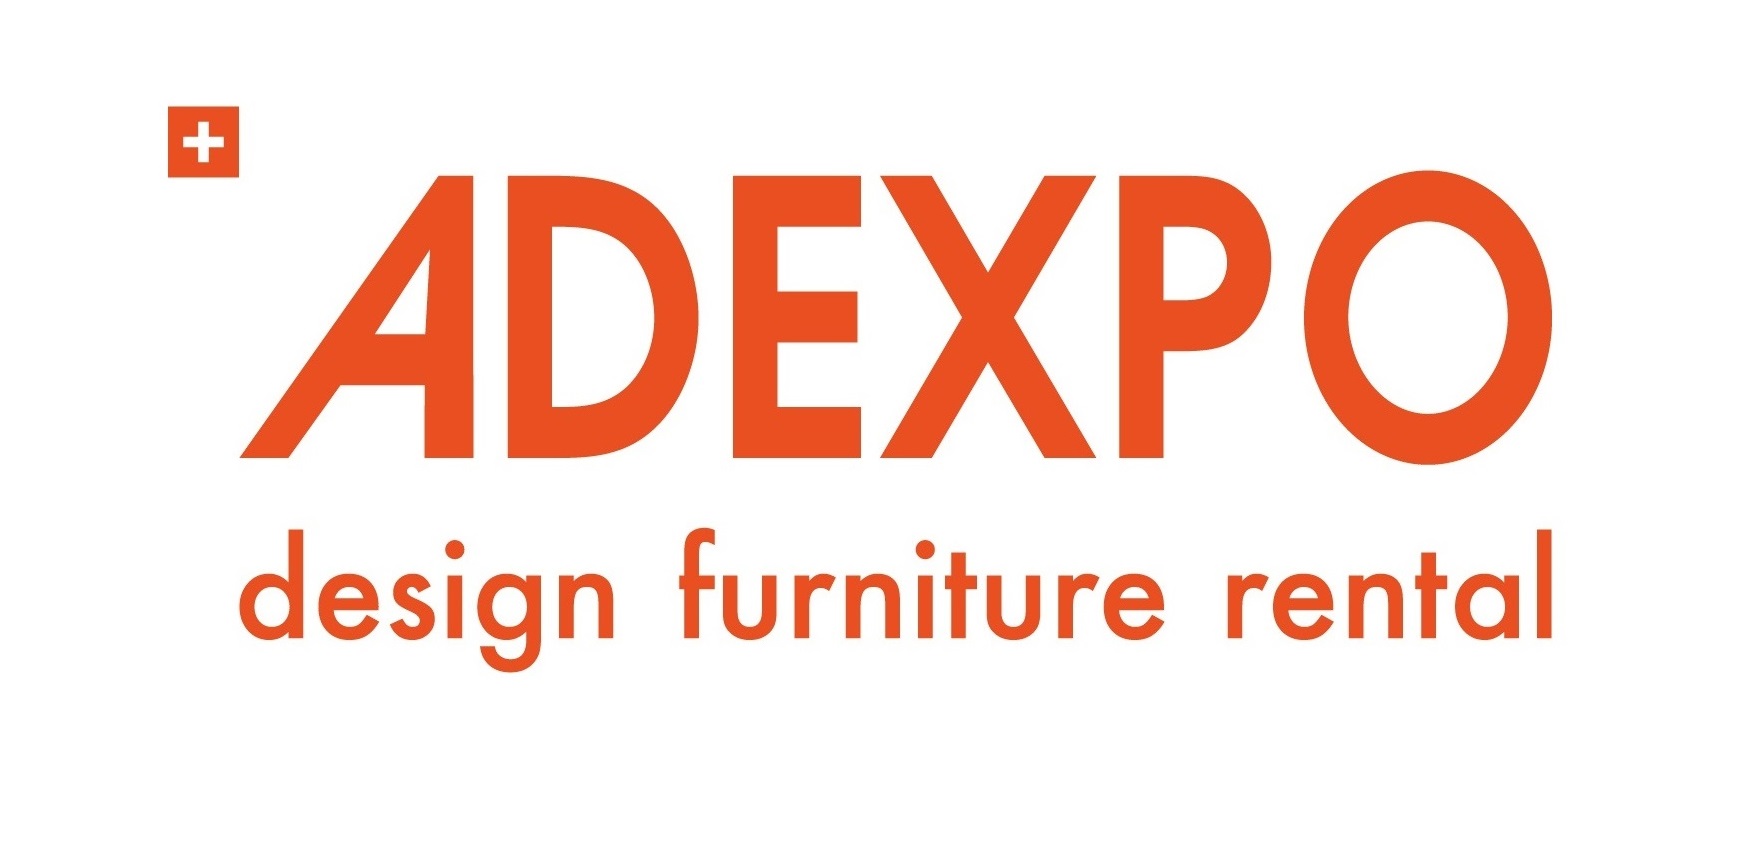 Adexpo – design furniture rental